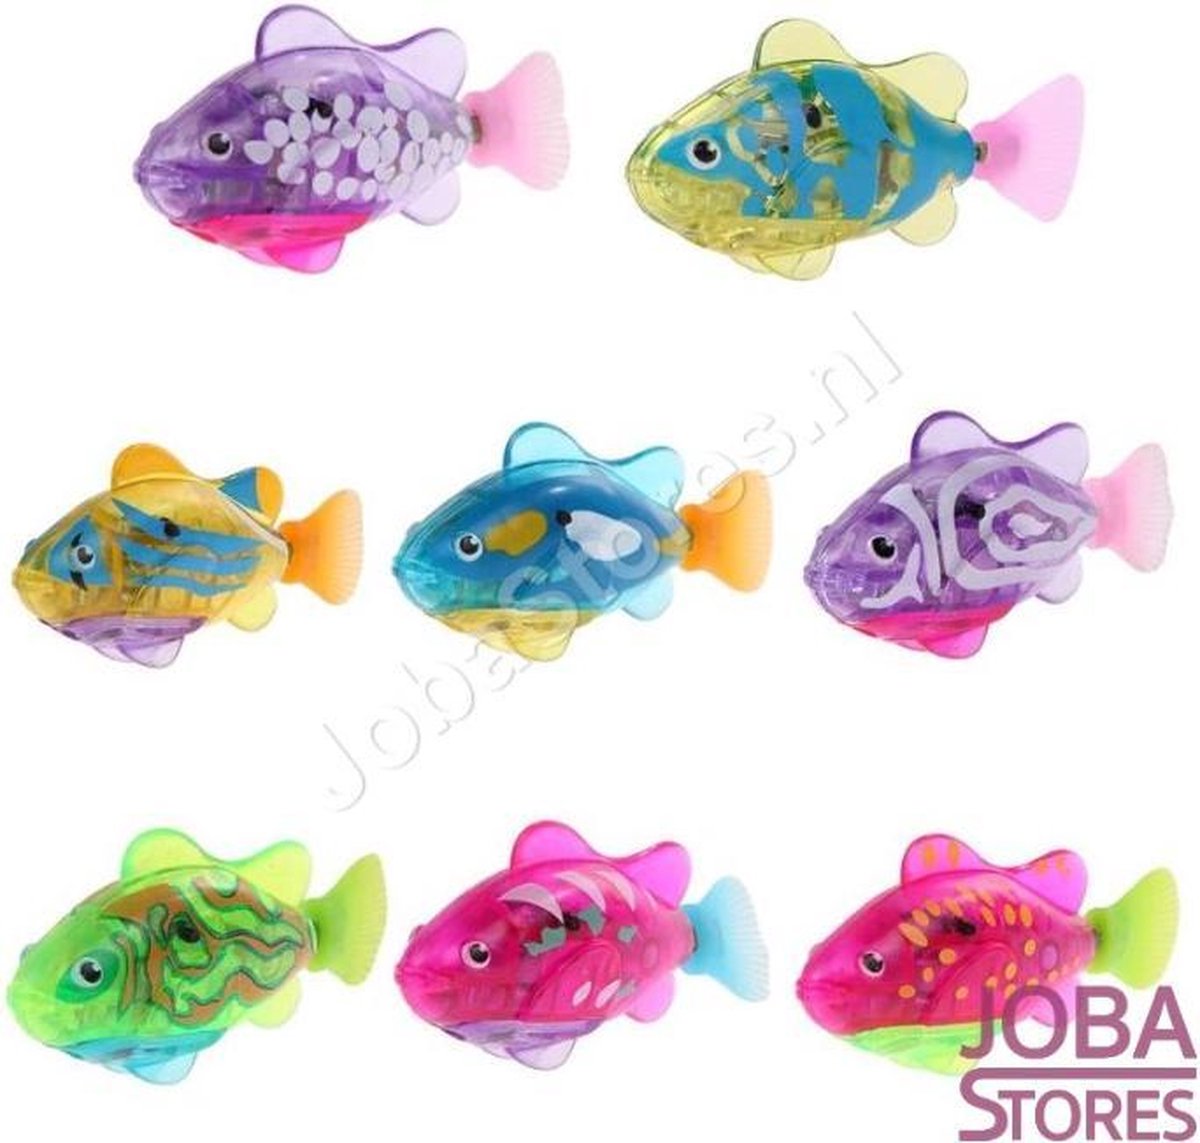 ISL Magic Flippity Fish Jouet pour Chat en Forme de Poisson avec